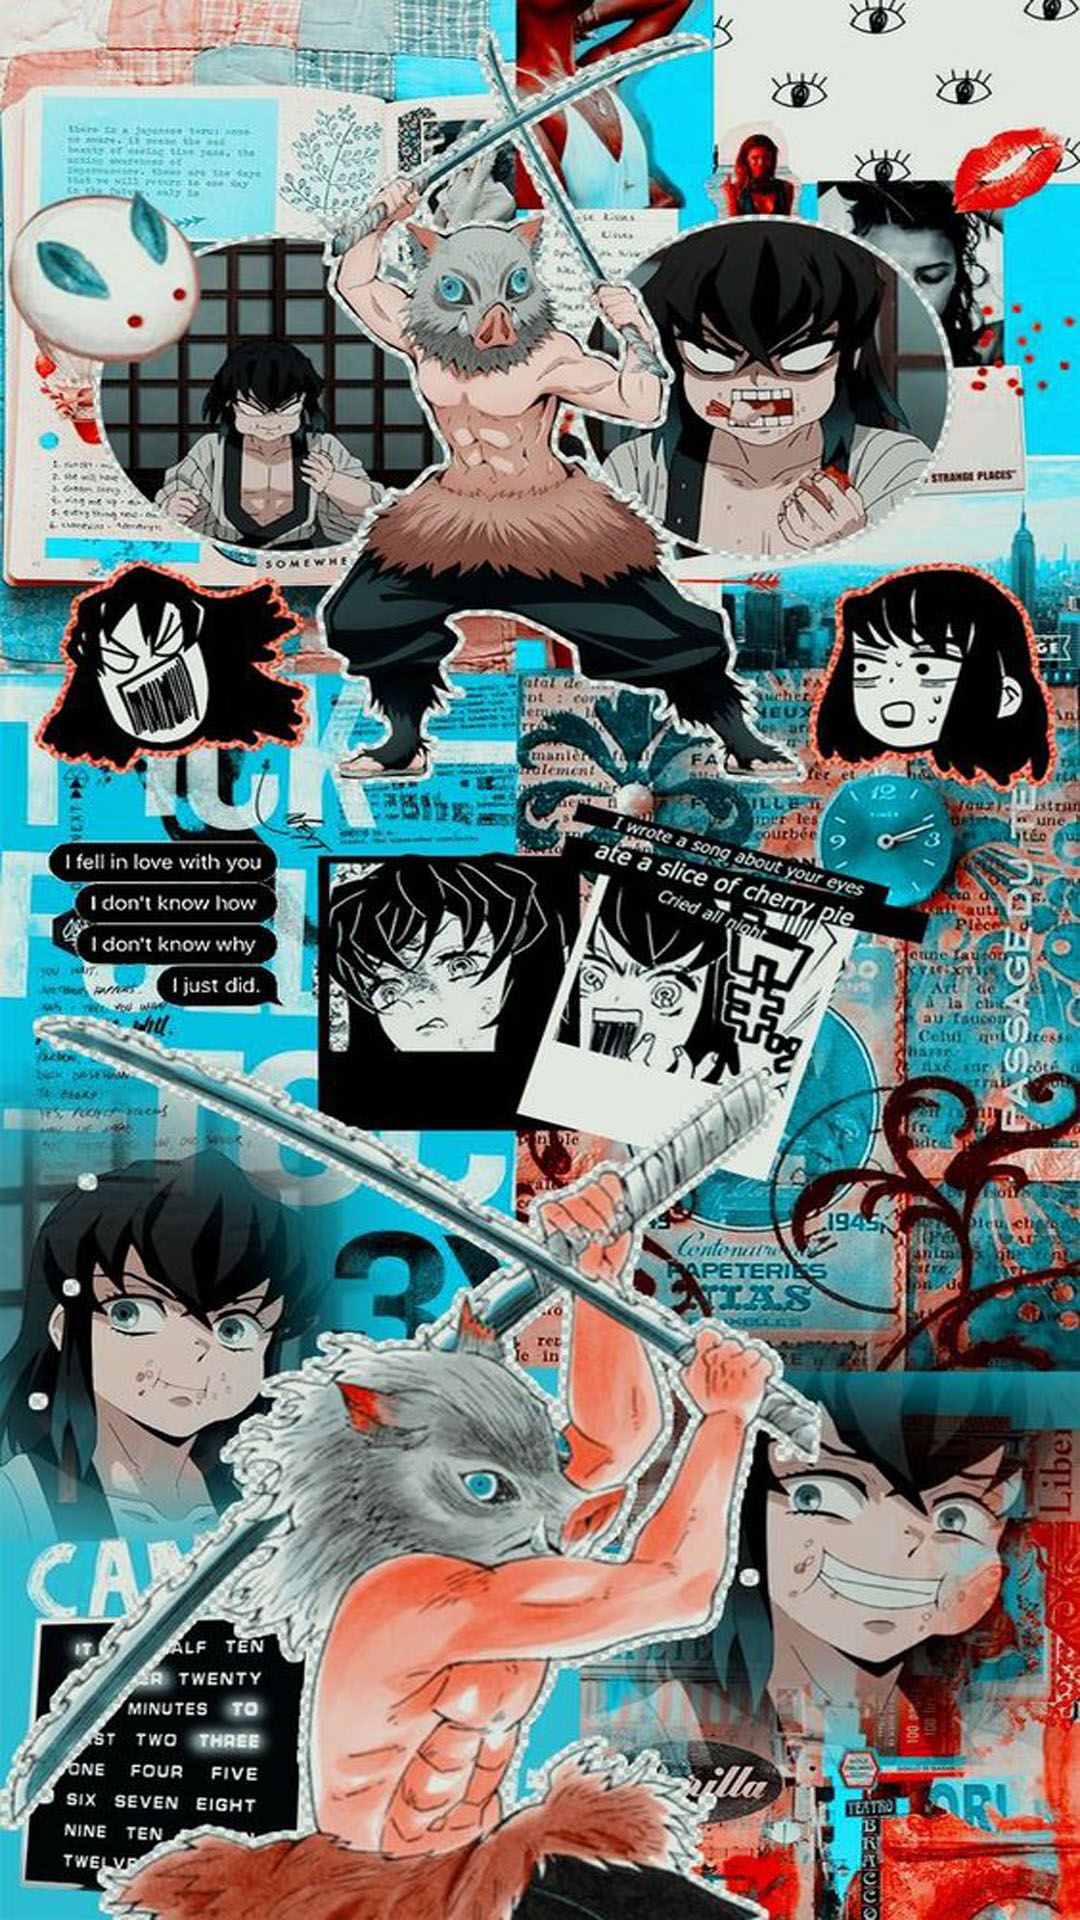 Inosuke Hashibira  Kimetsu no Yaiba Wallpaper  Anime wallpaper Cute  anime wallpaper Anime demon